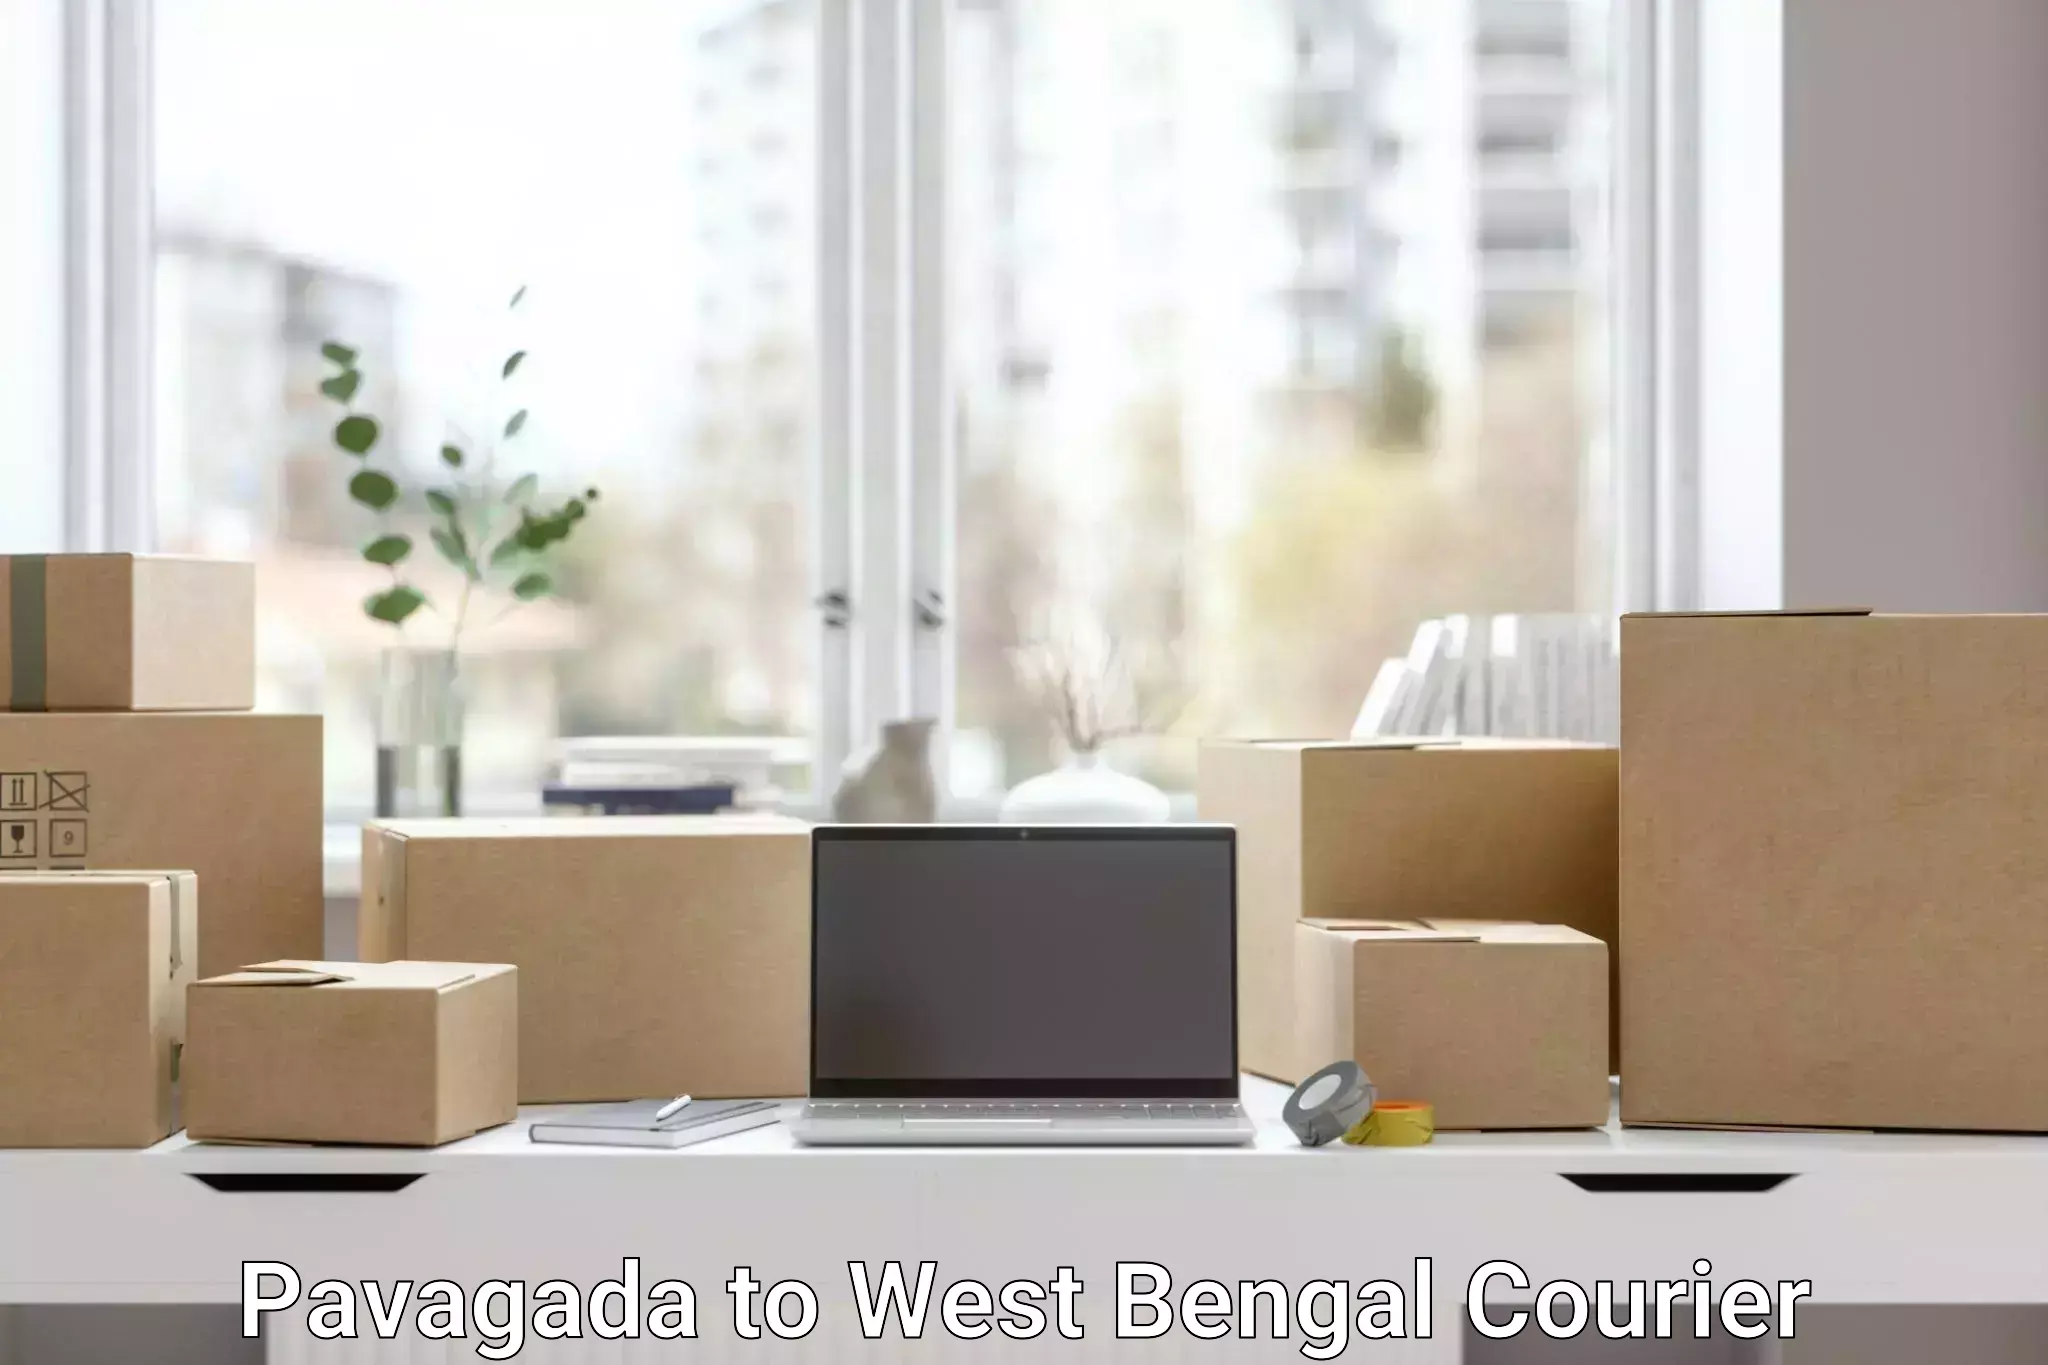 Premium delivery services Pavagada to Algarah